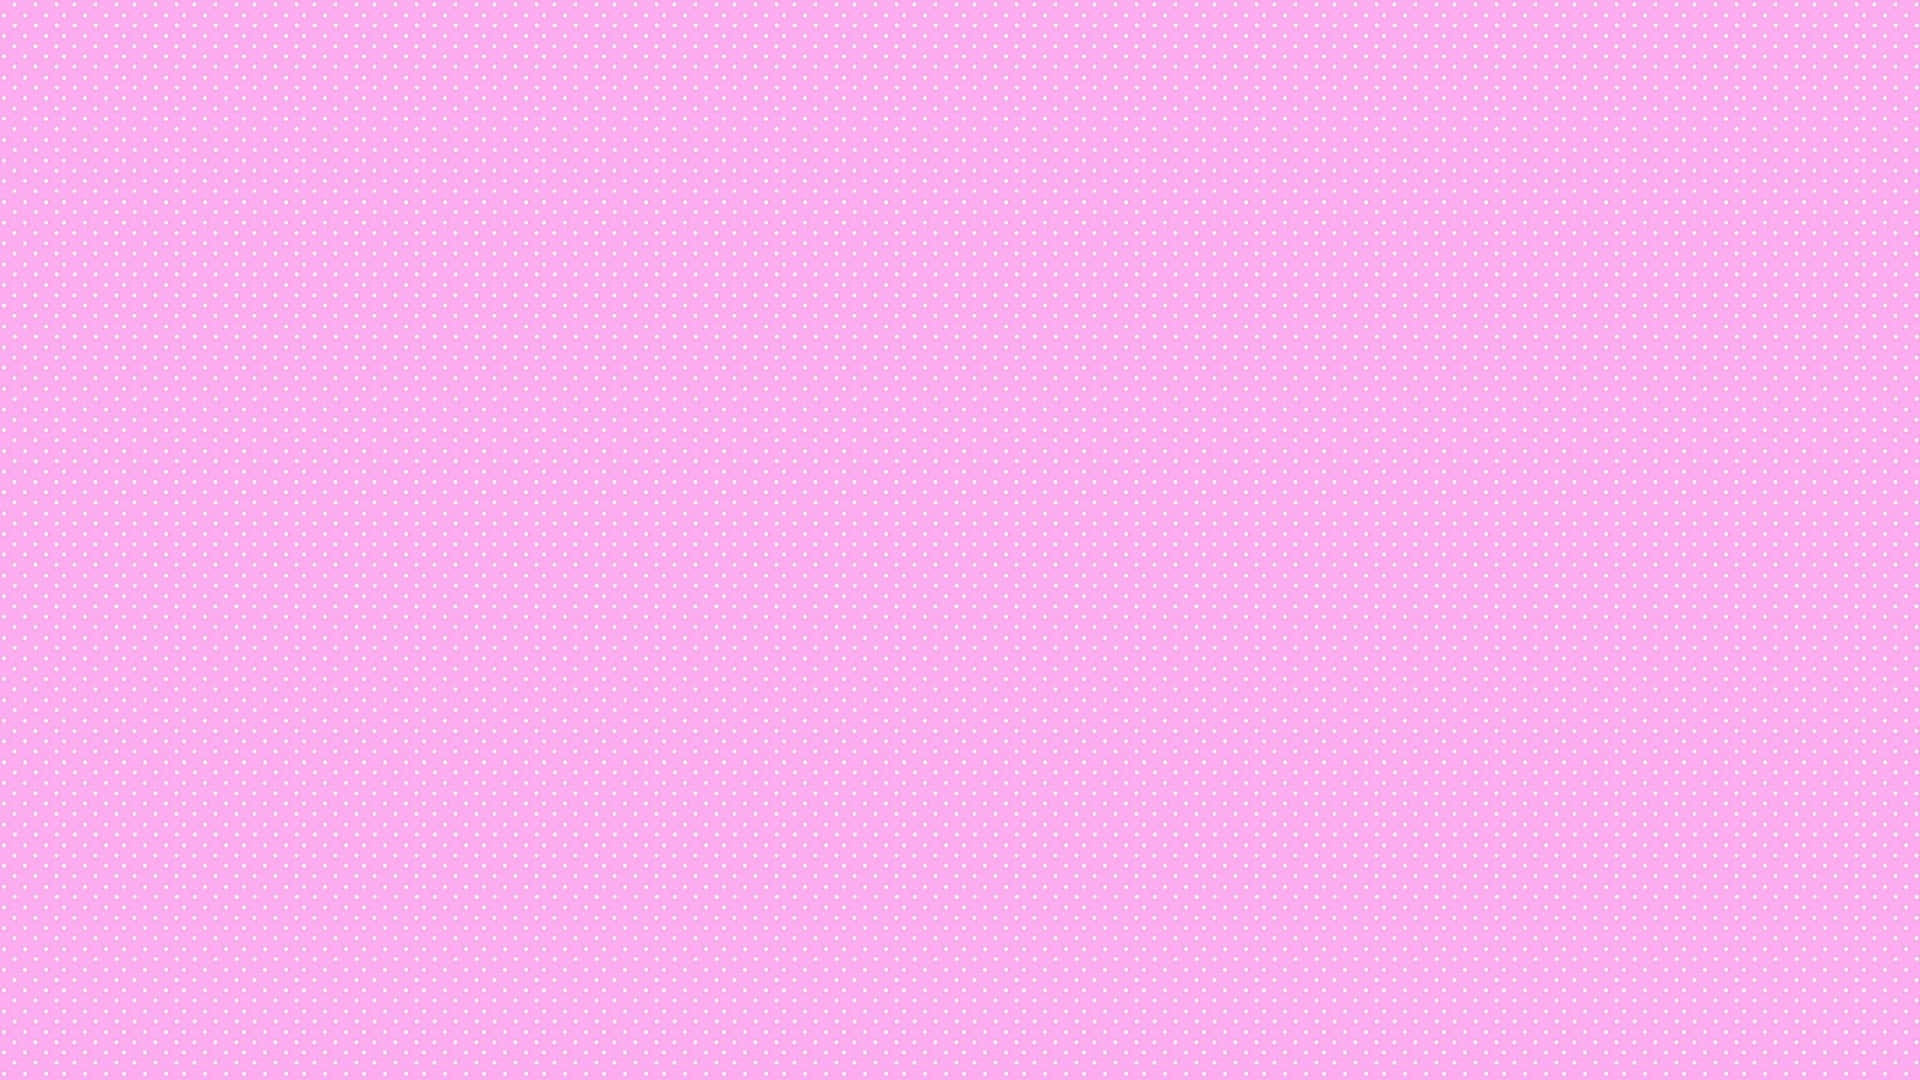 Btsposando Frente A Un Fondo De Pantalla De Escritorio Estético En Color Rosa. Fondo de pantalla